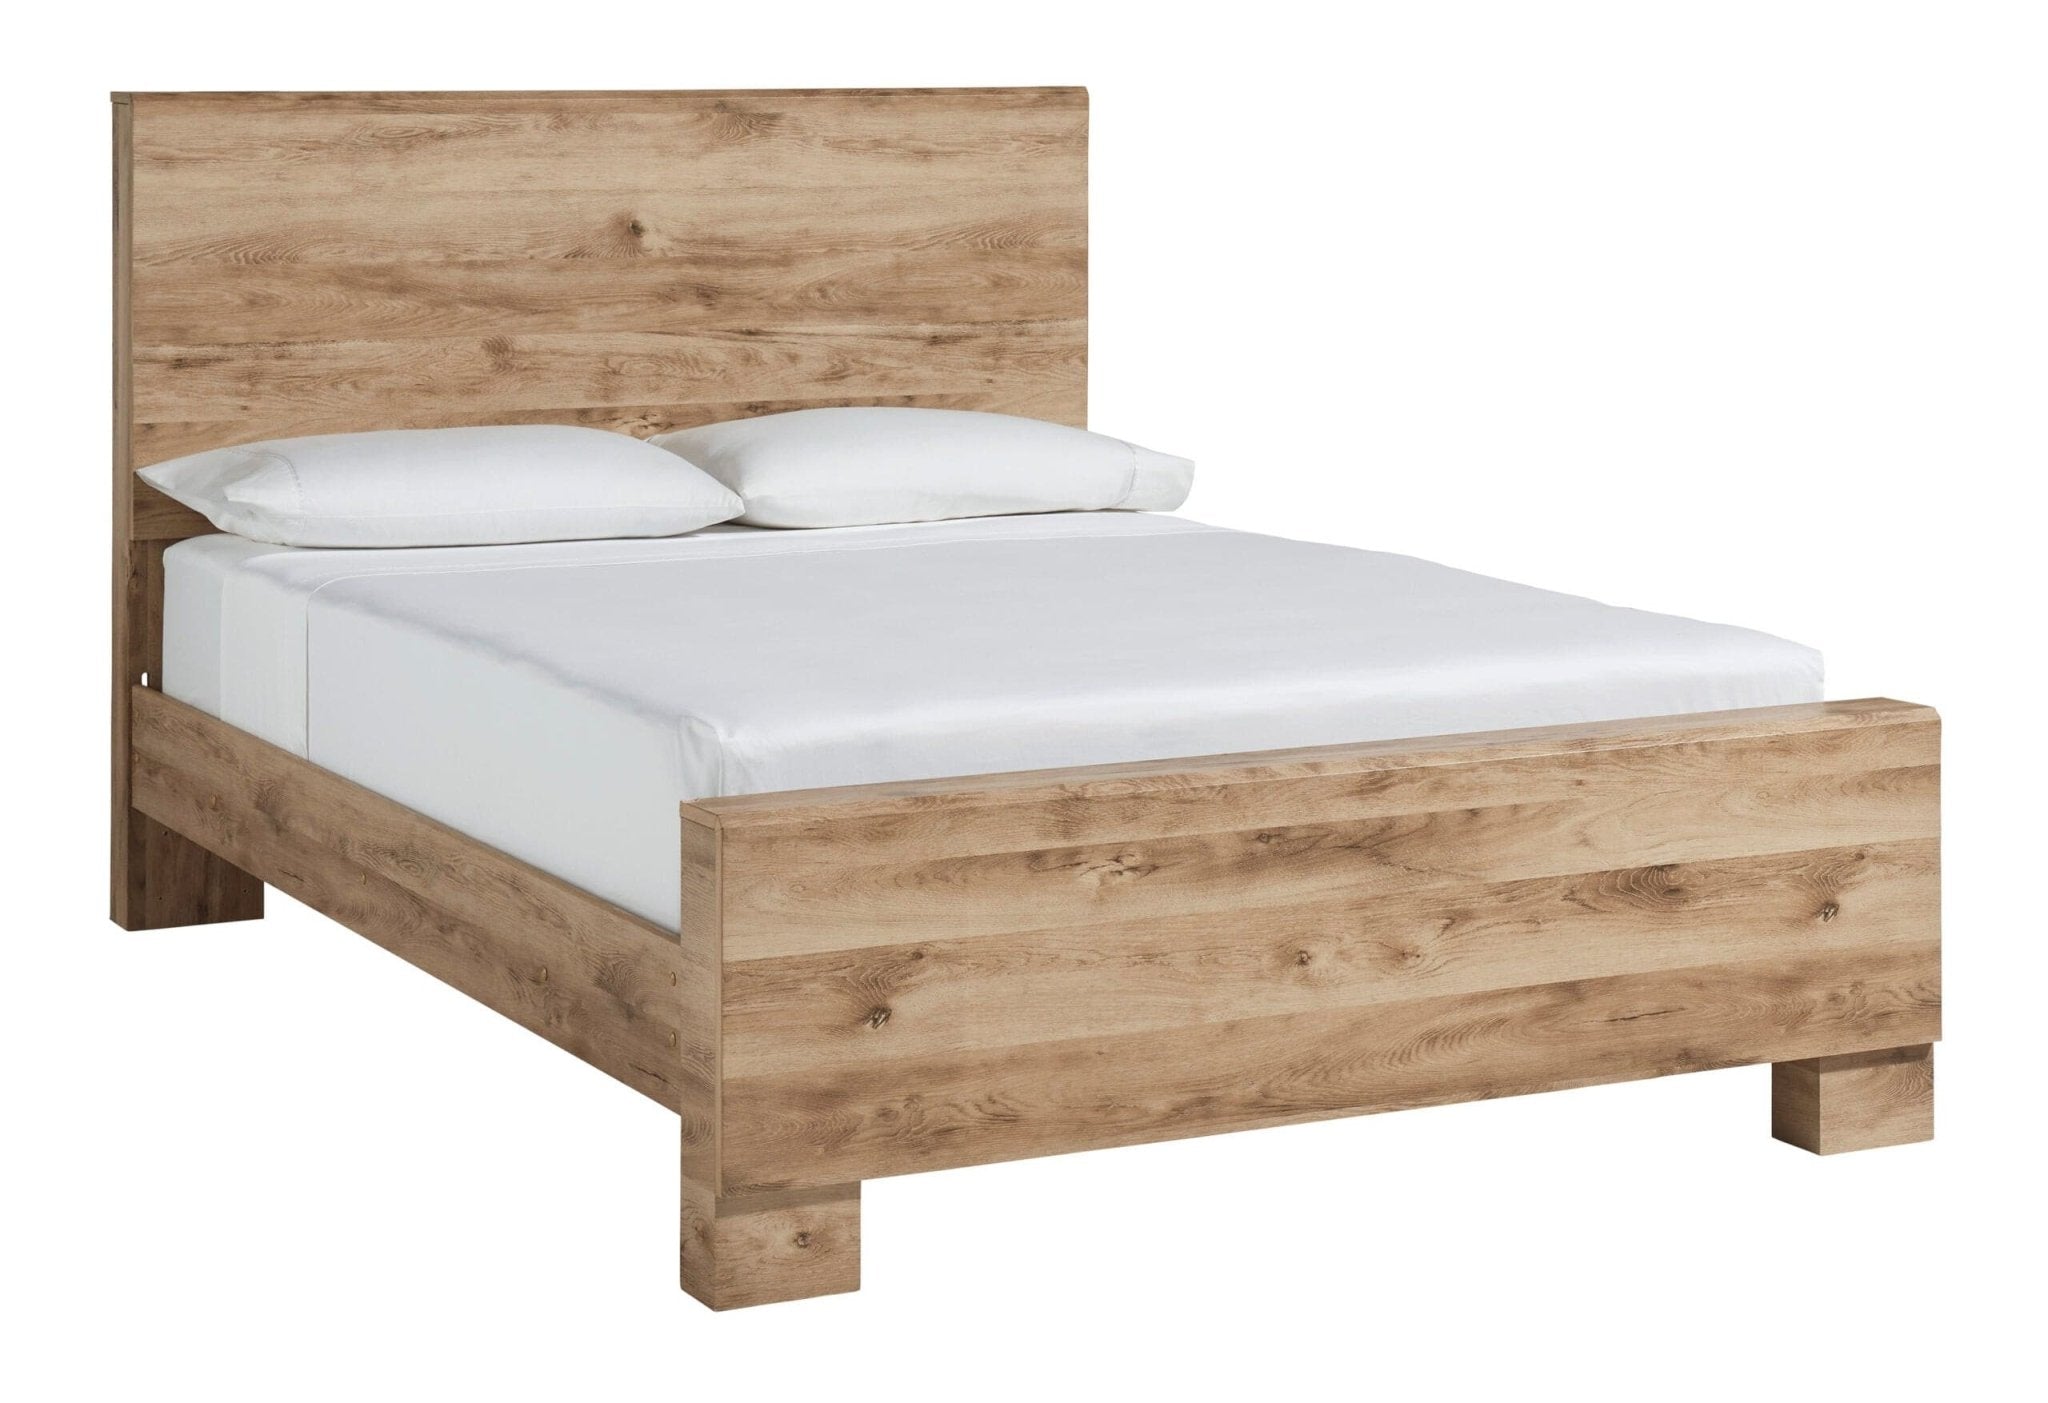 Hyanna Twin Size Bed B1050-52/53/83 - DarseysAshley